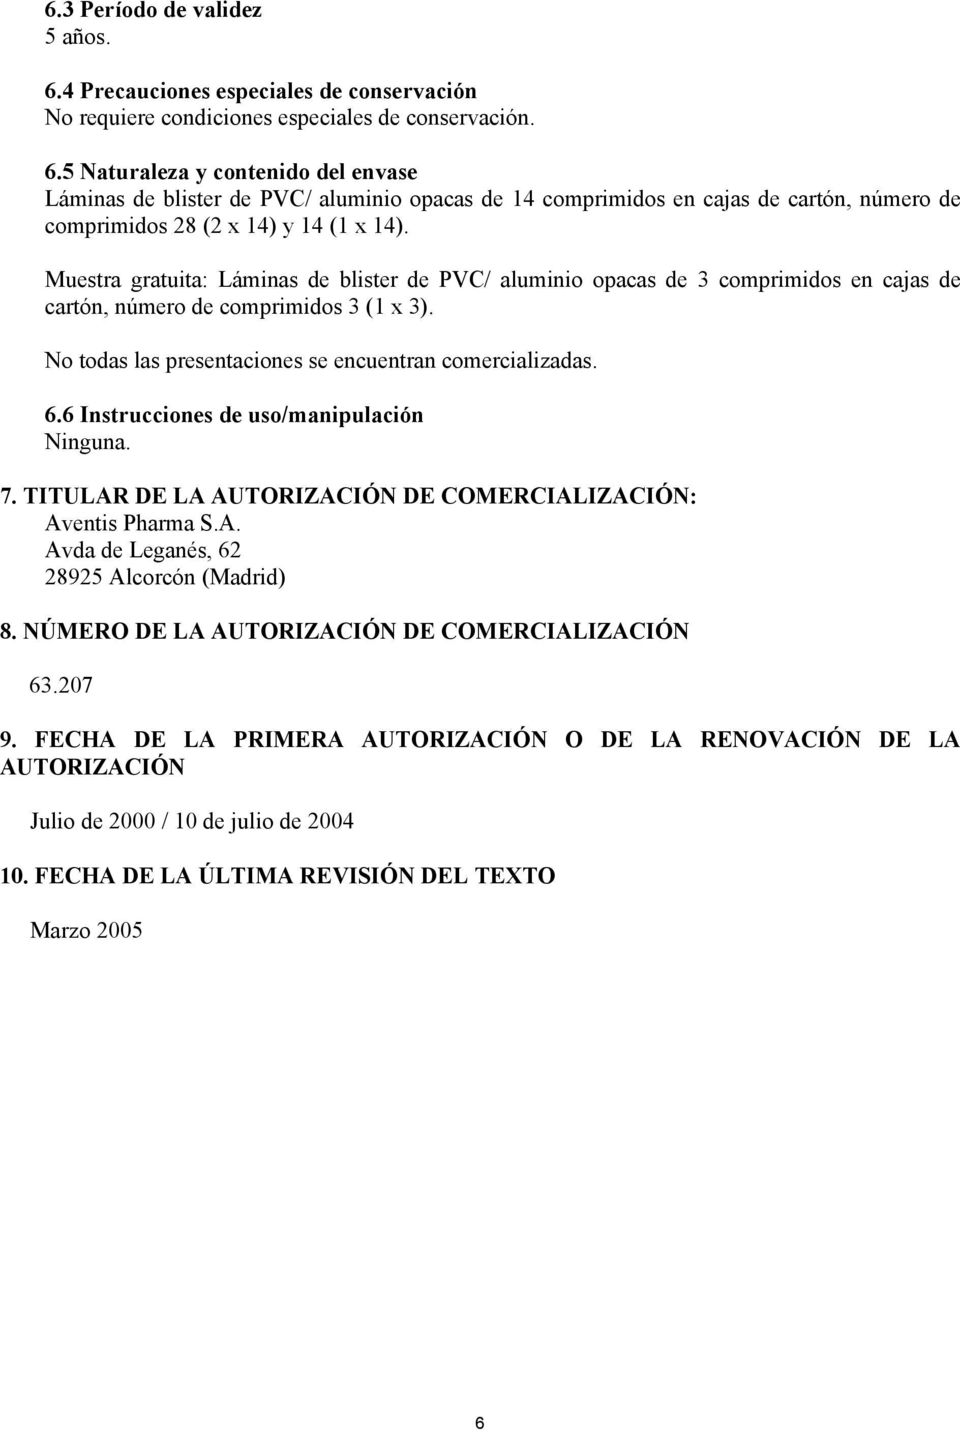 6 Instrucciones de uso/manipulación Ninguna. 7. TITULAR DE LA AUTORIZACIÓN DE COMERCIALIZACIÓN: Aventis Pharma S.A. Avda de Leganés, 62 28925 Alcorcón (Madrid) 8.